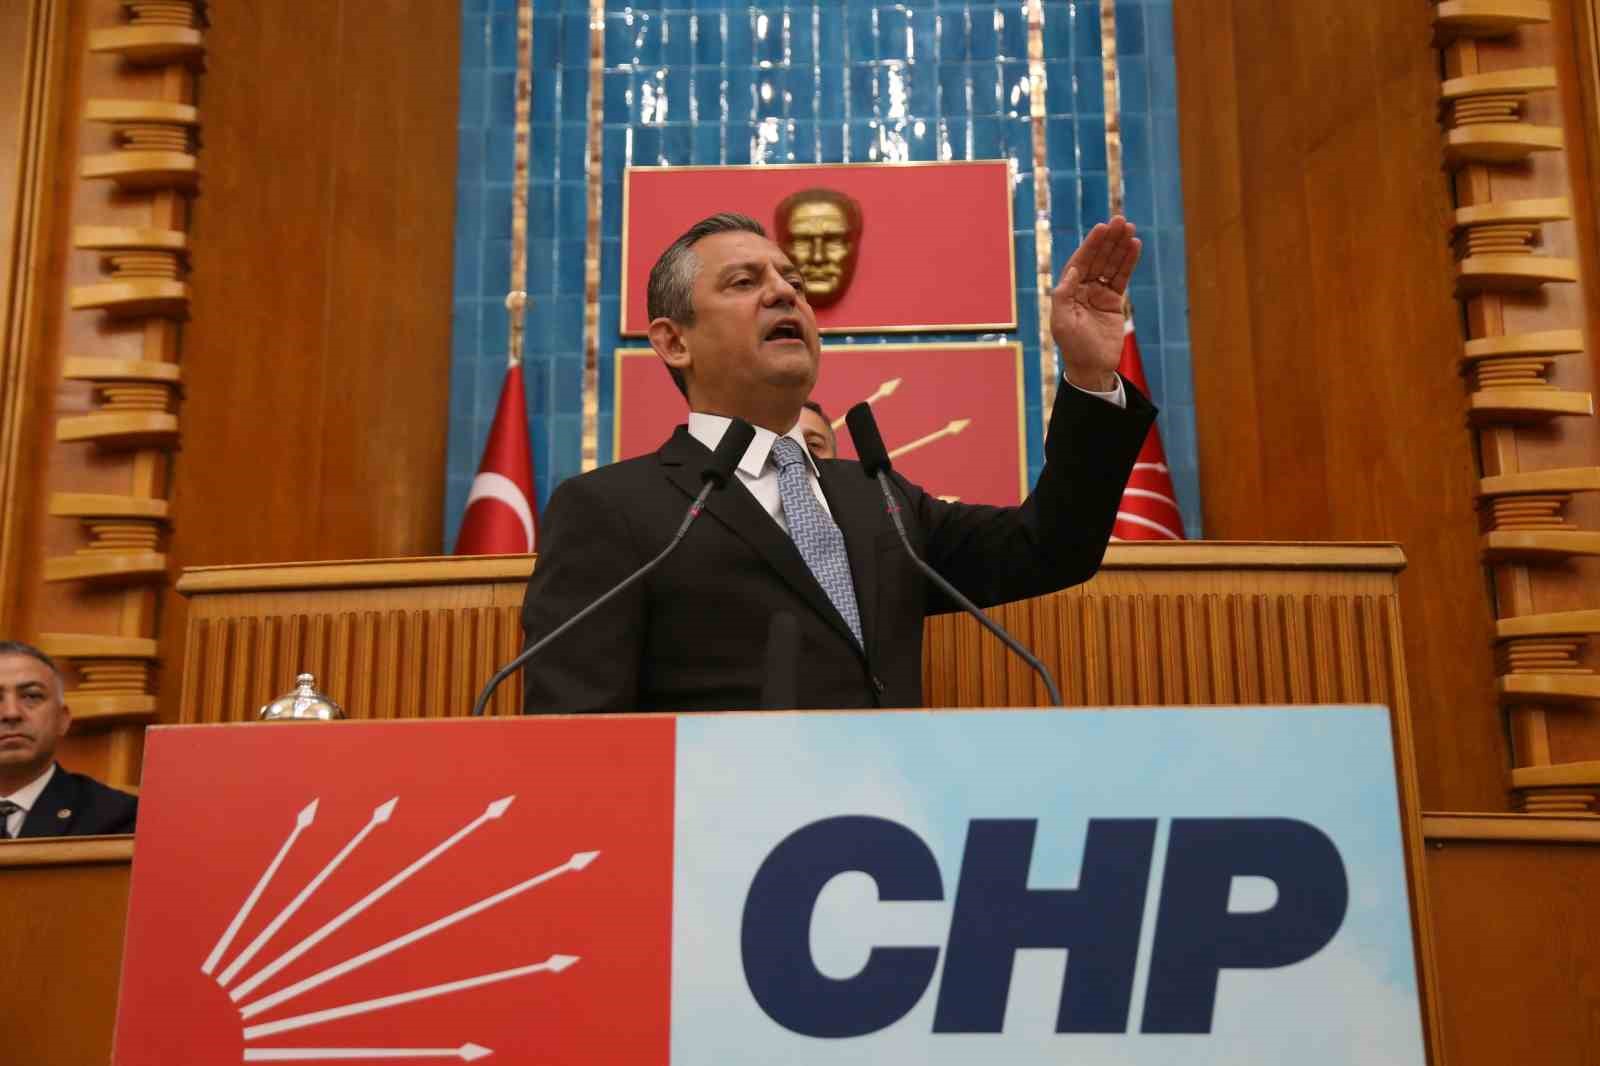 CHP Lideri Özel: “Millete ’kemer sık’ denirken milletin vekilleri tasarrufun dışında kalmasınlar”